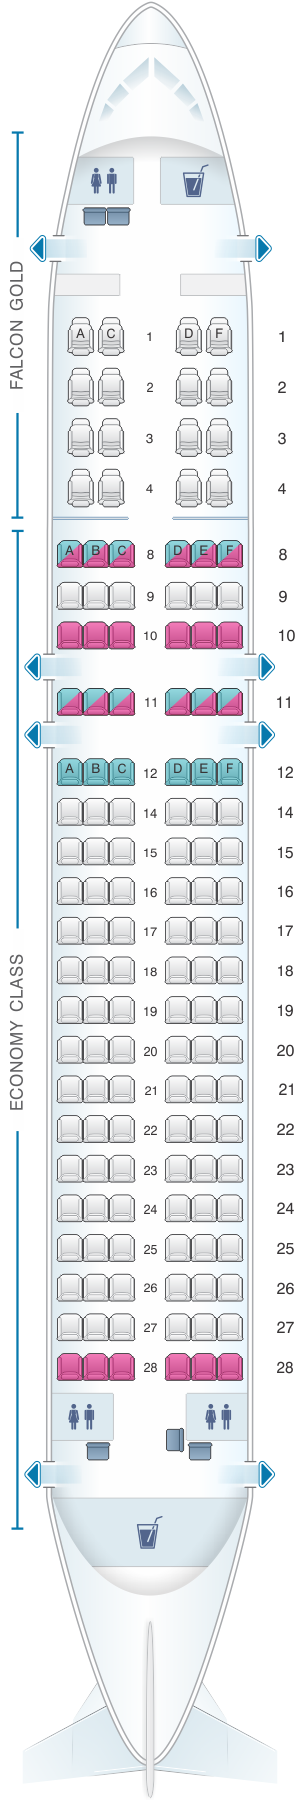 Seat Map Gulf Air Airbus A320 200 | SeatMaestro